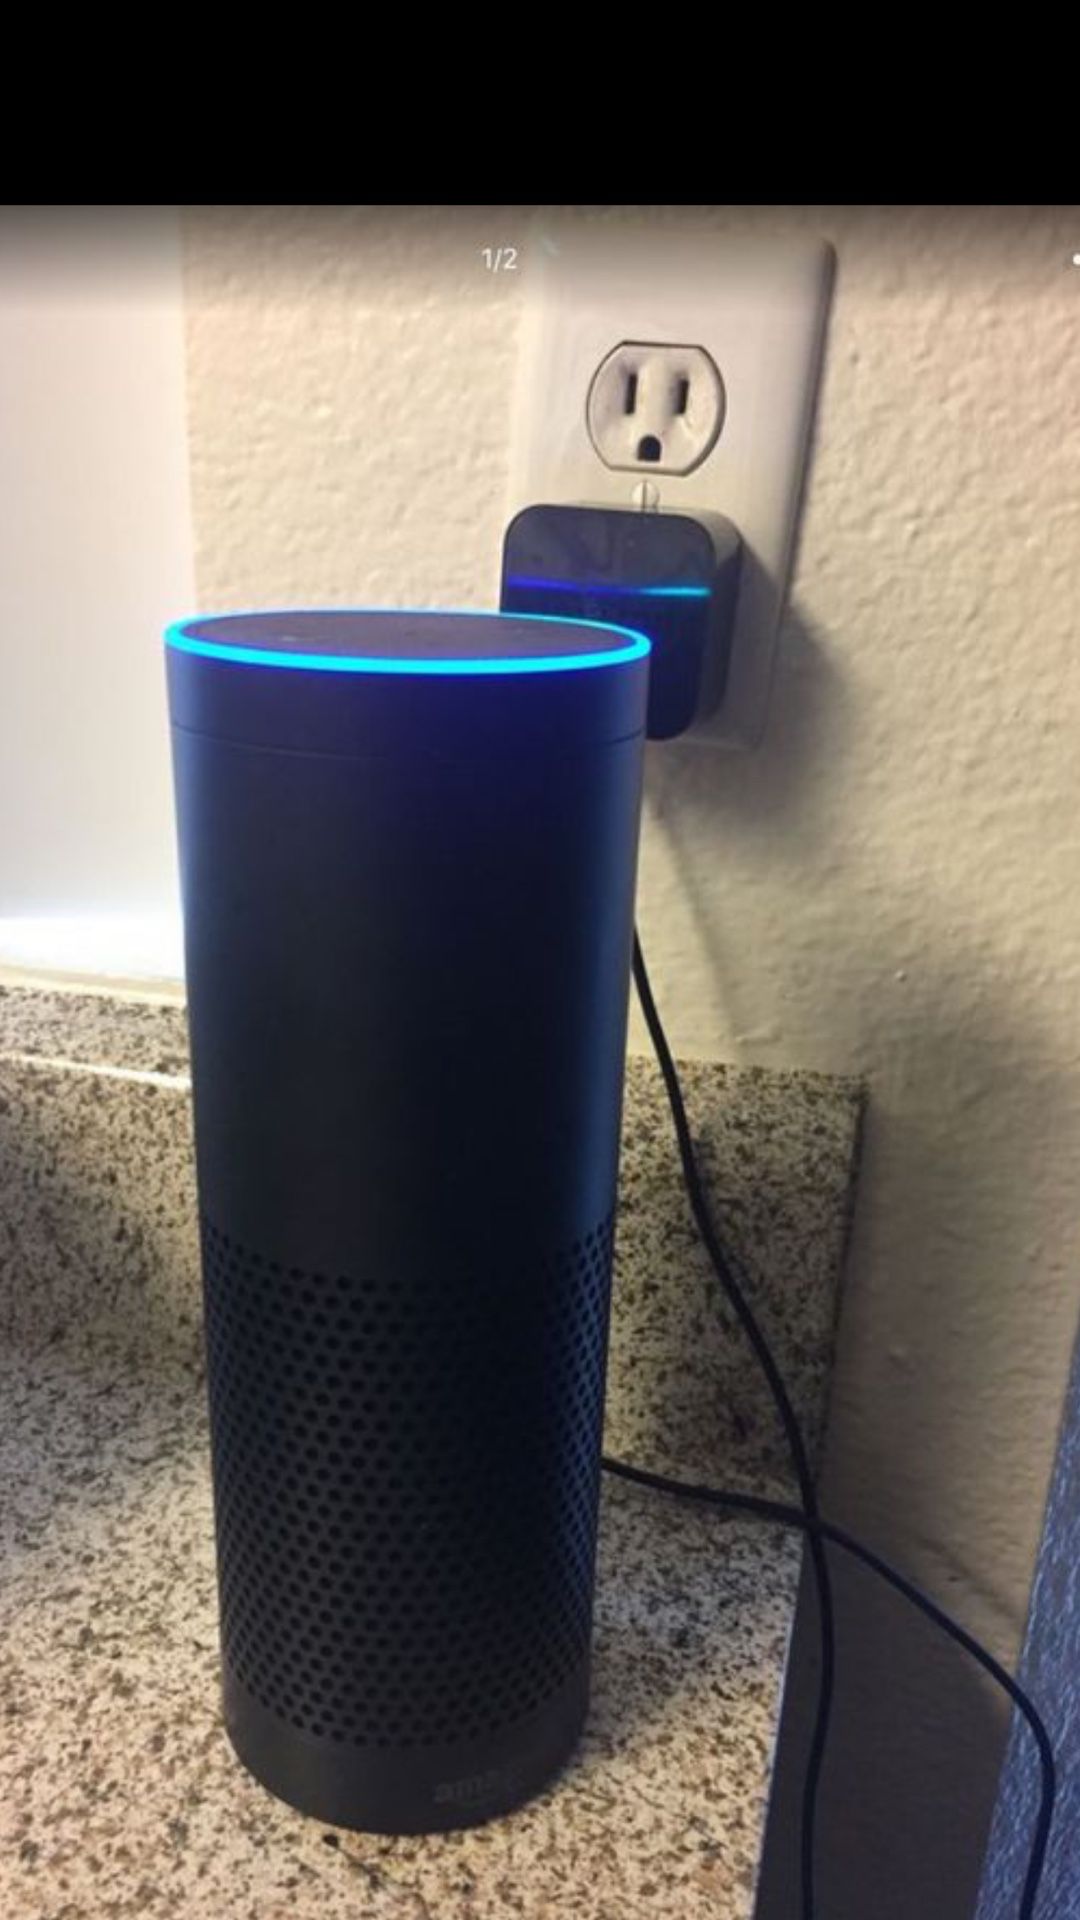 Amazon Echo Speaker With Alexa